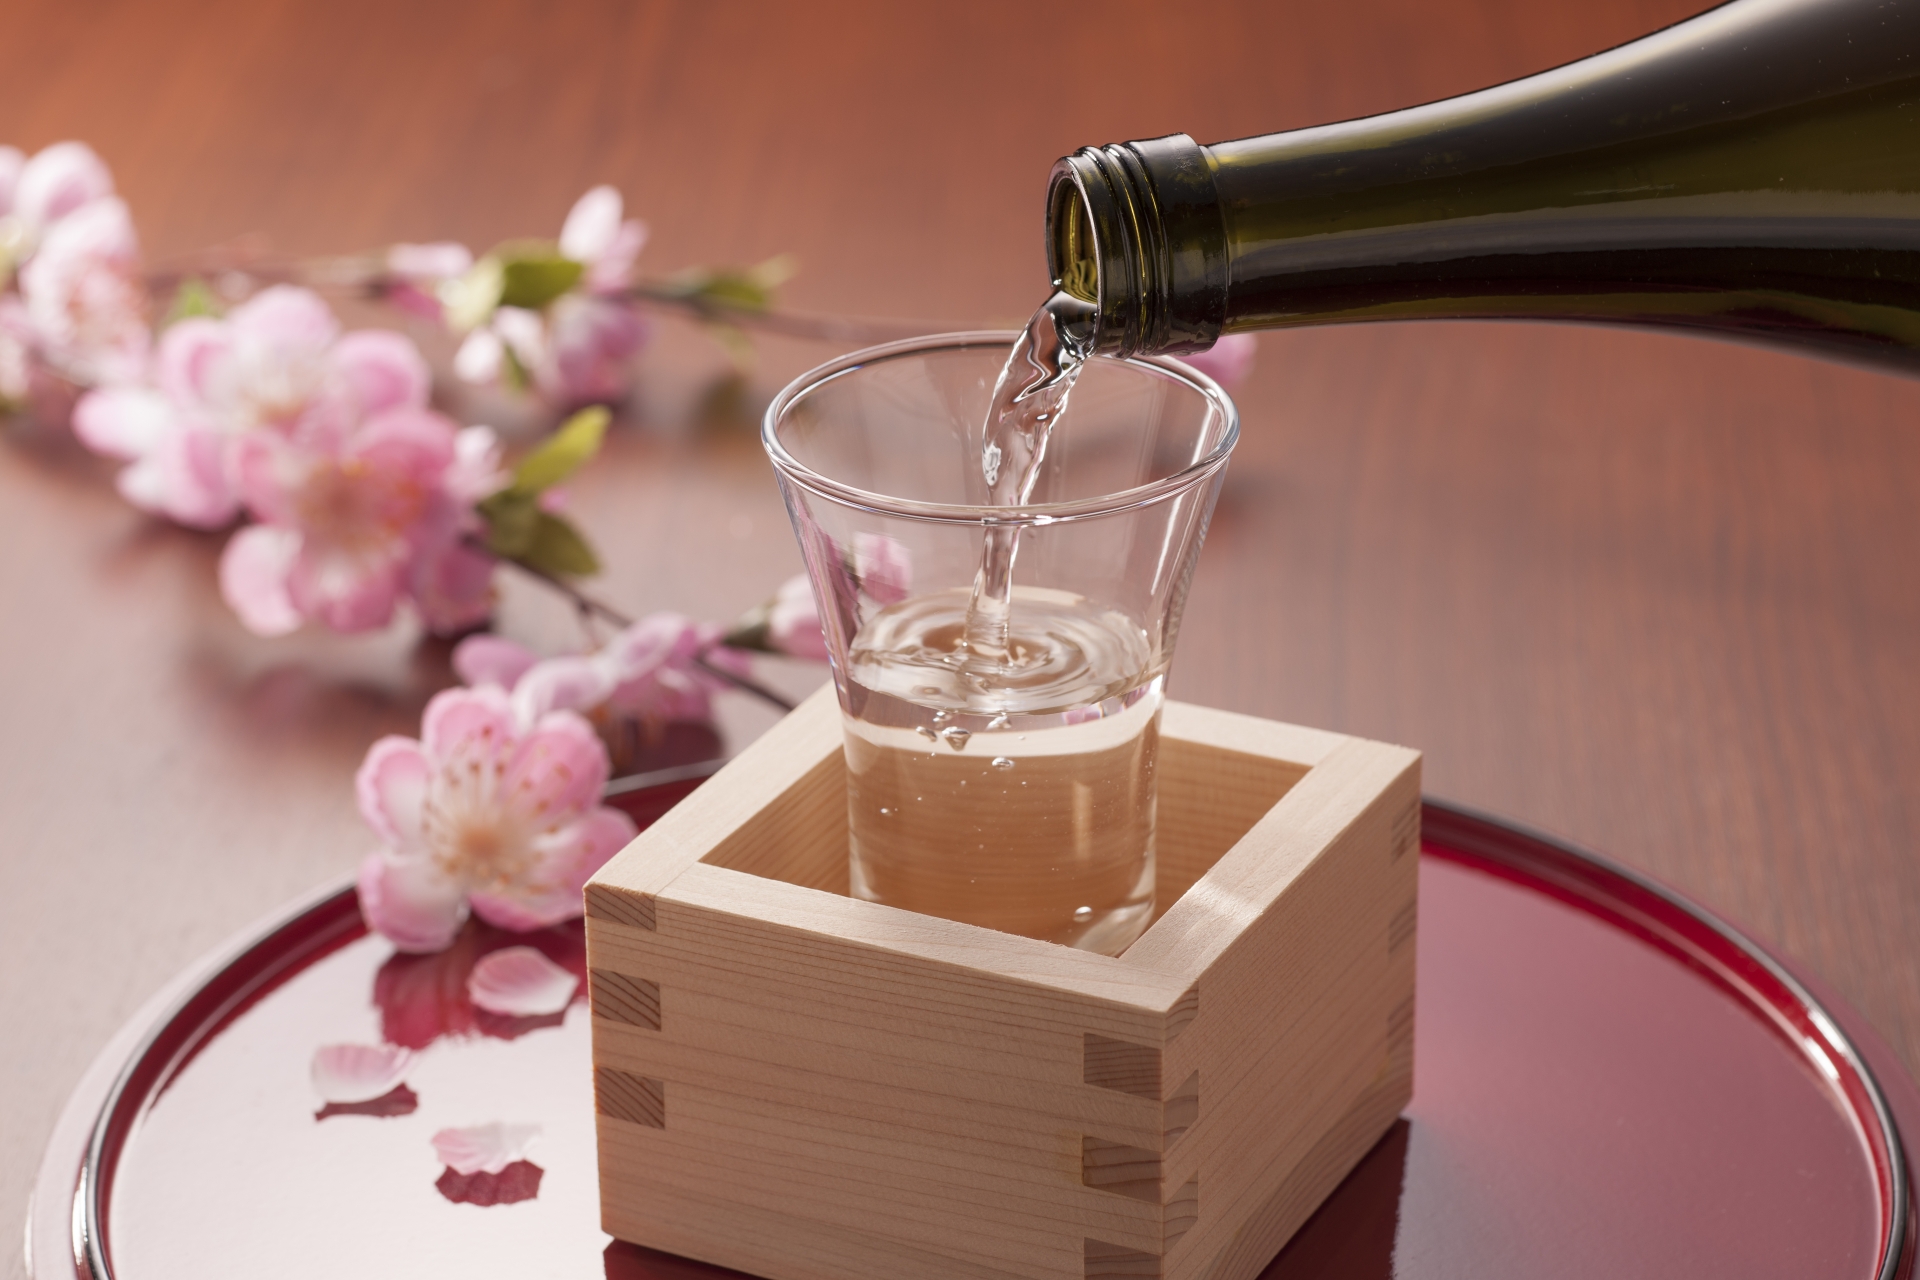 Enjoy Sake in Nagano